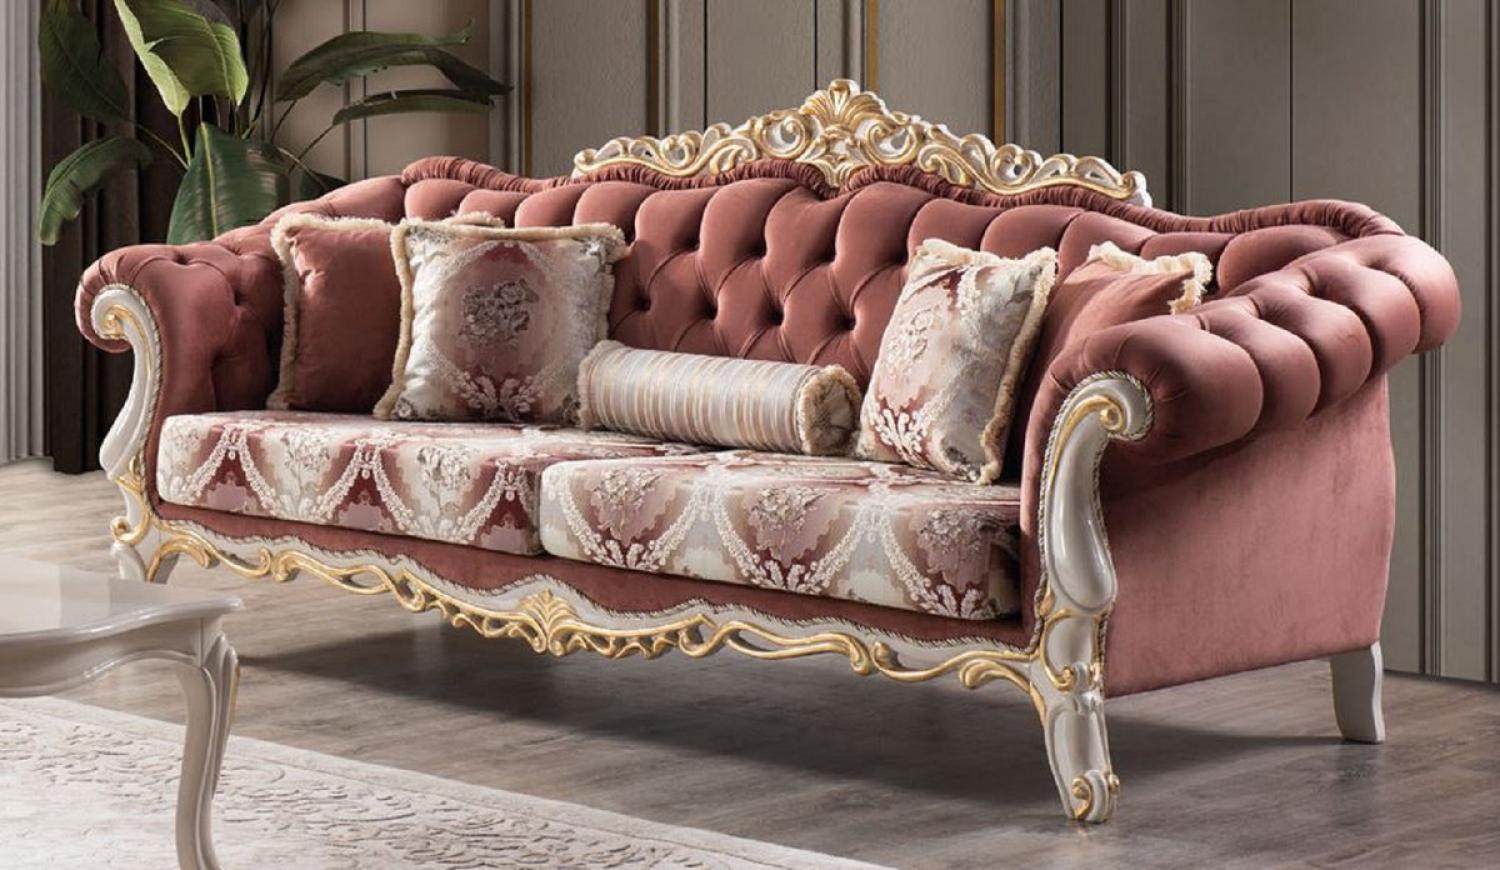 Casa Padrino Luxus Barock Sofa Rot / Weiß / Gold - Prunkvolles Wohnzimmer Sofa mit elegantem Muster und dekorativen Kissen Bild 1